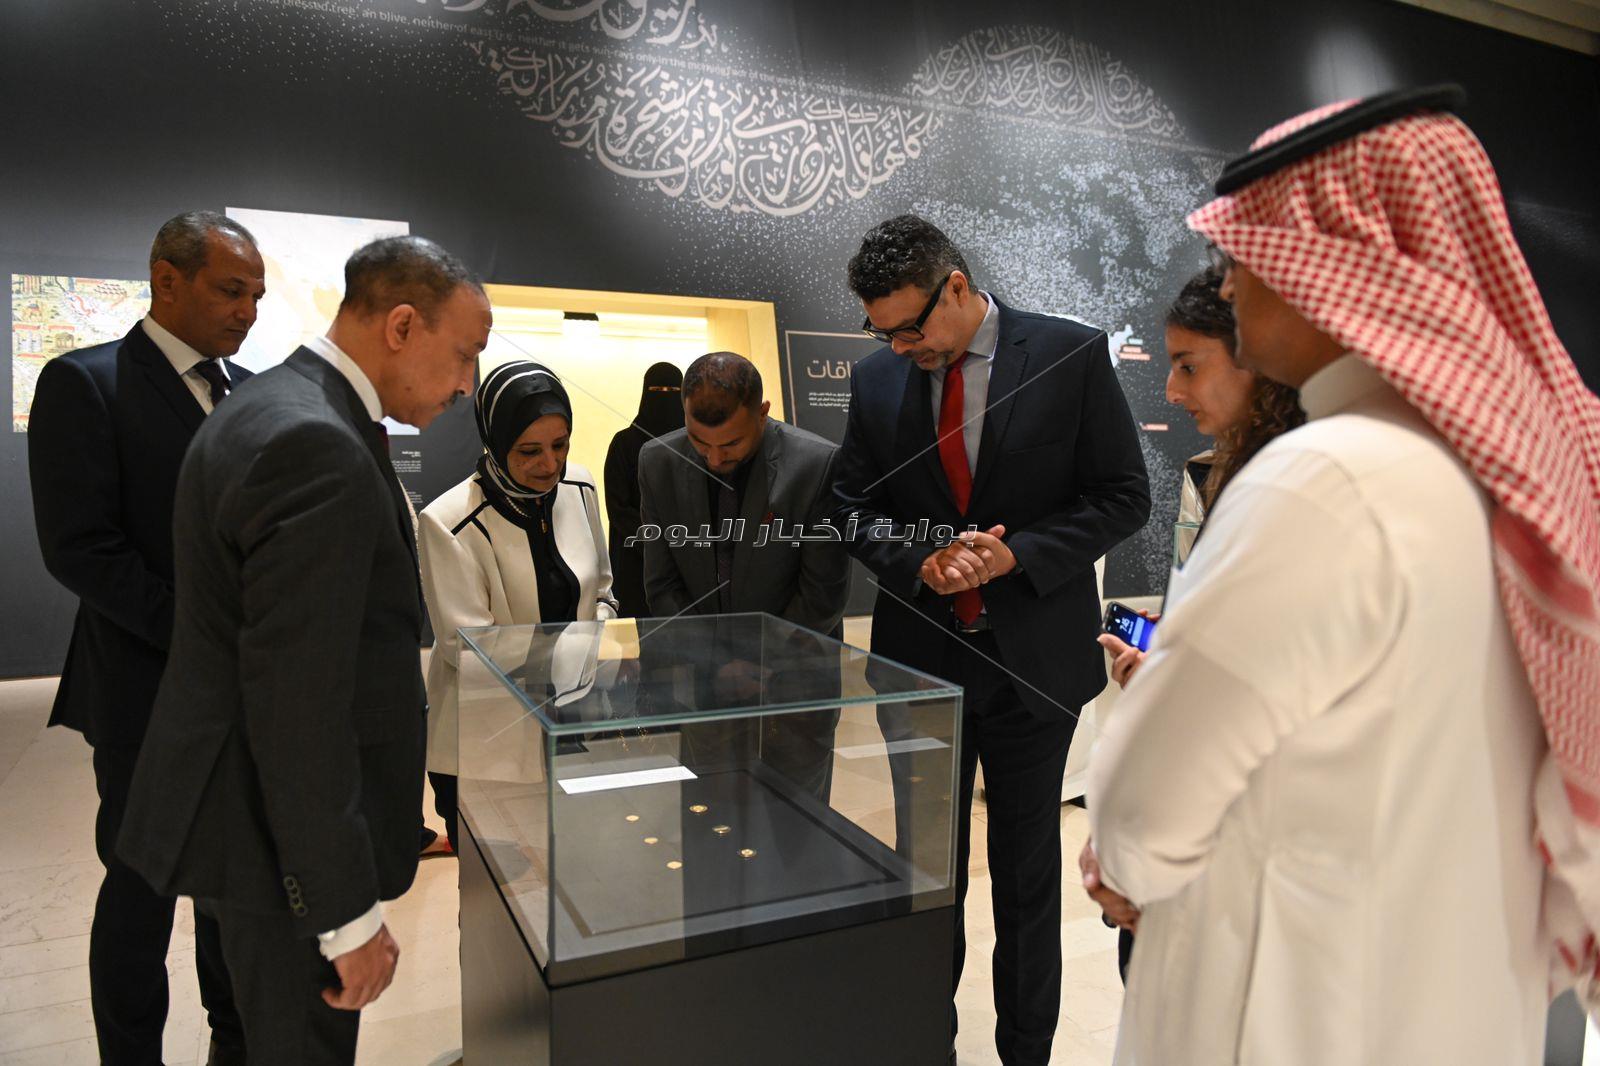  وفد رسمي من وزارة السياحة والآثار يزور معرض شطر المسجد بالسعودية.